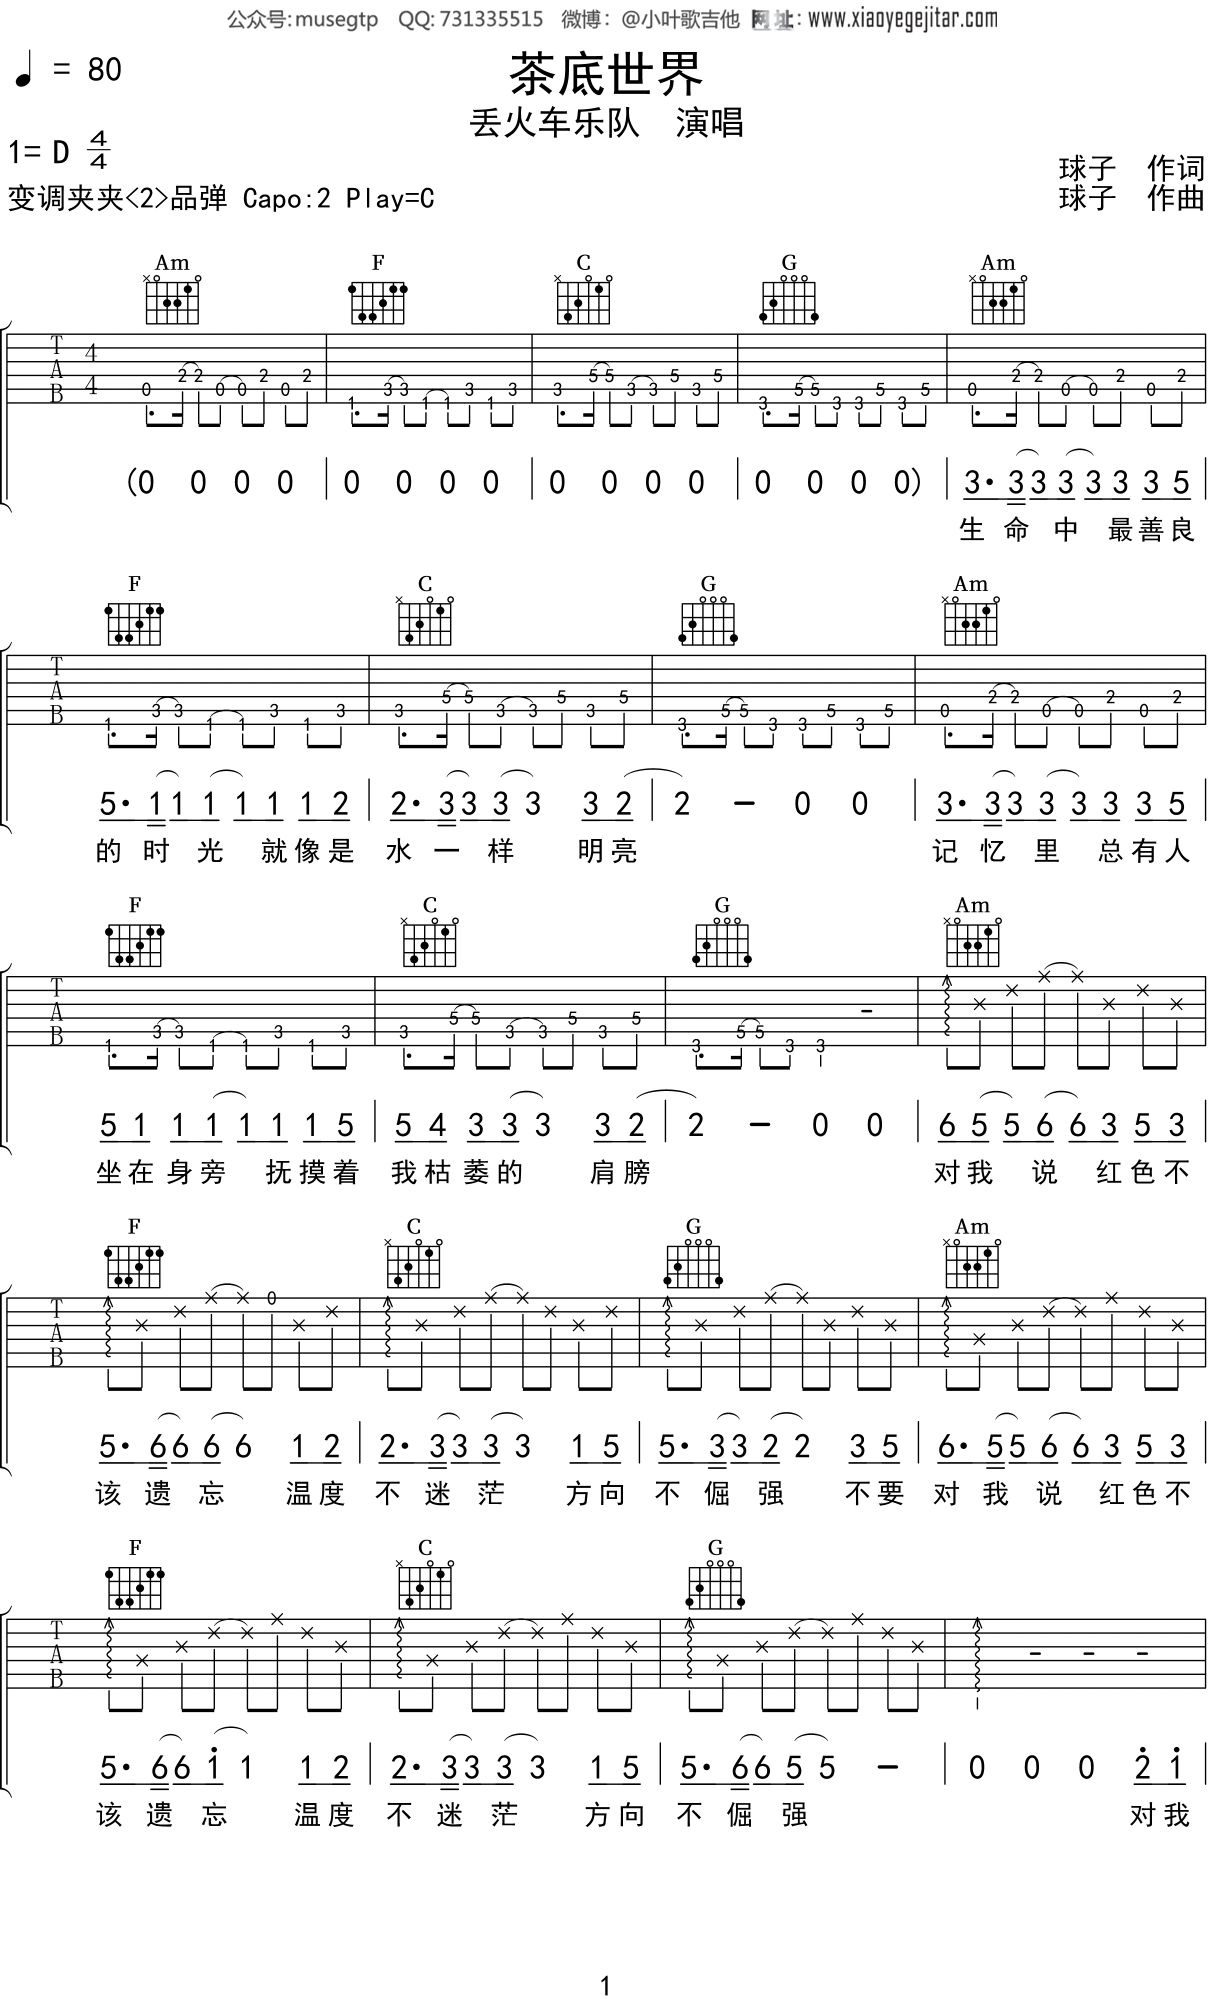 白兰鸽巡游记 - 丢火车乐队 - 吉他谱(小磊编配) - 嗨吉他